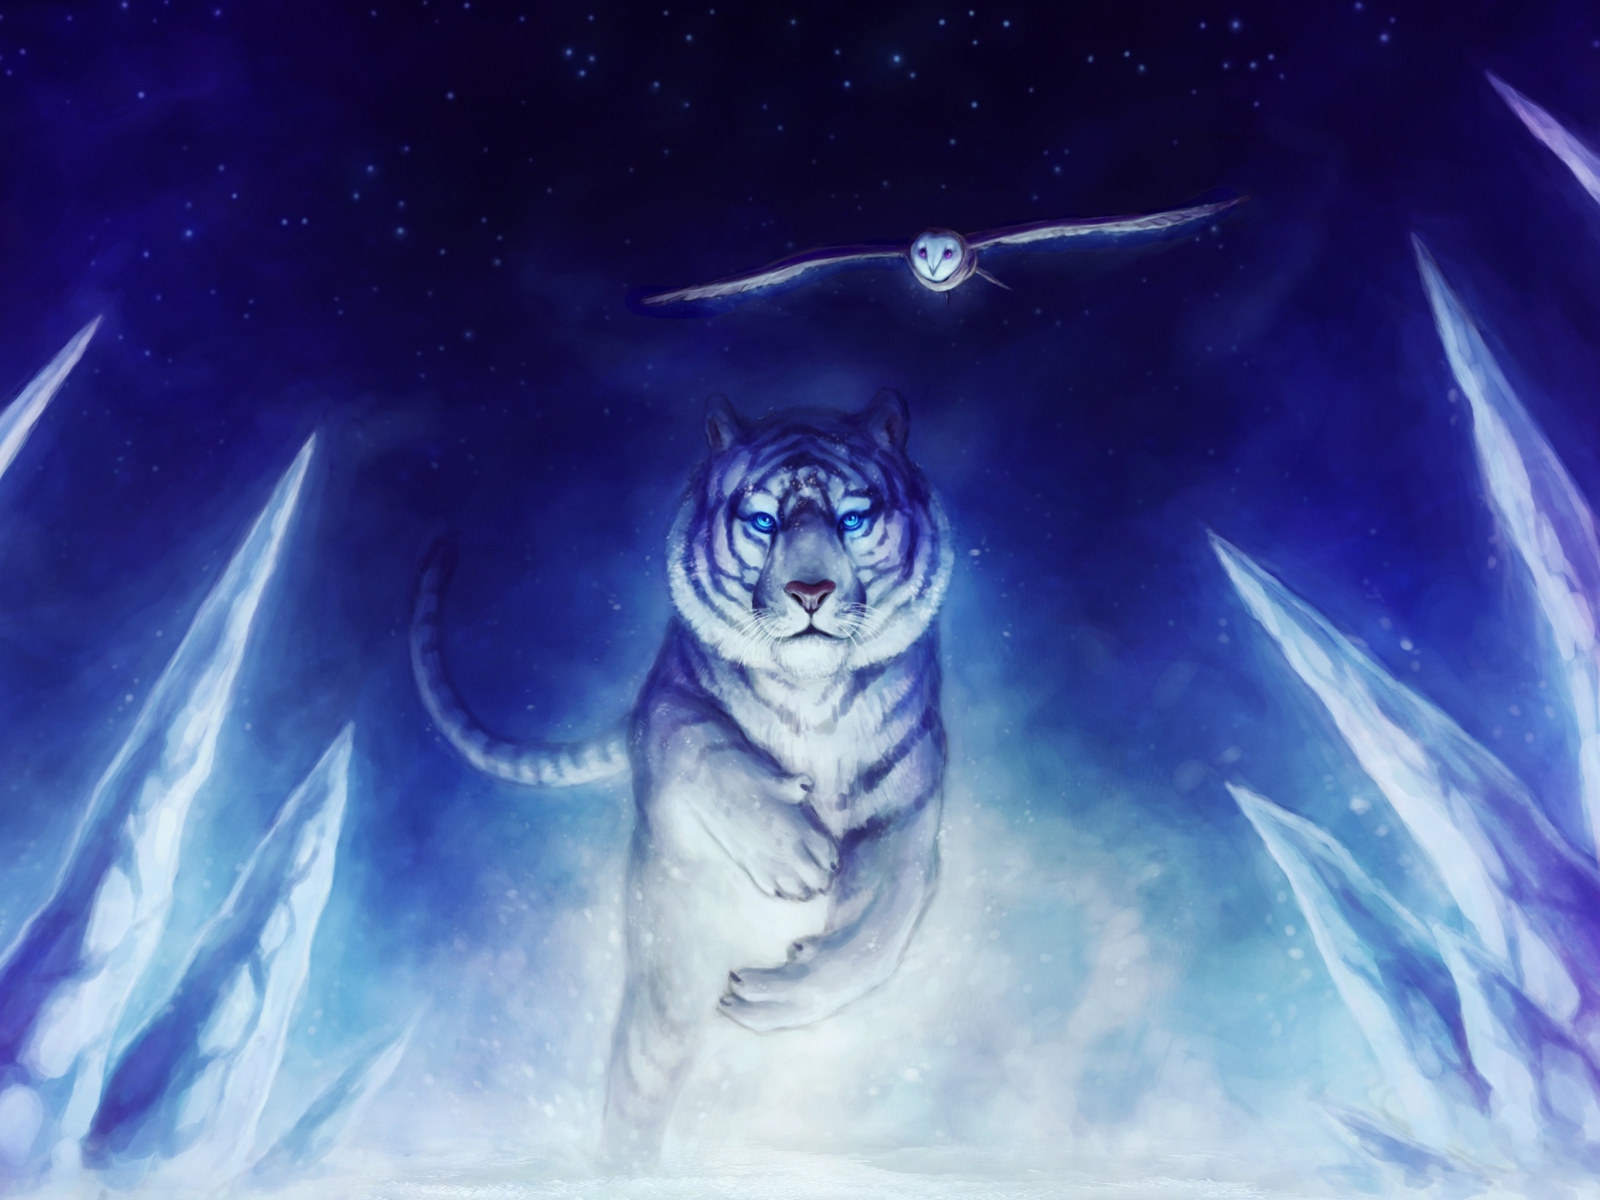 Sfondi Tiger & Owl Art 1600x1200